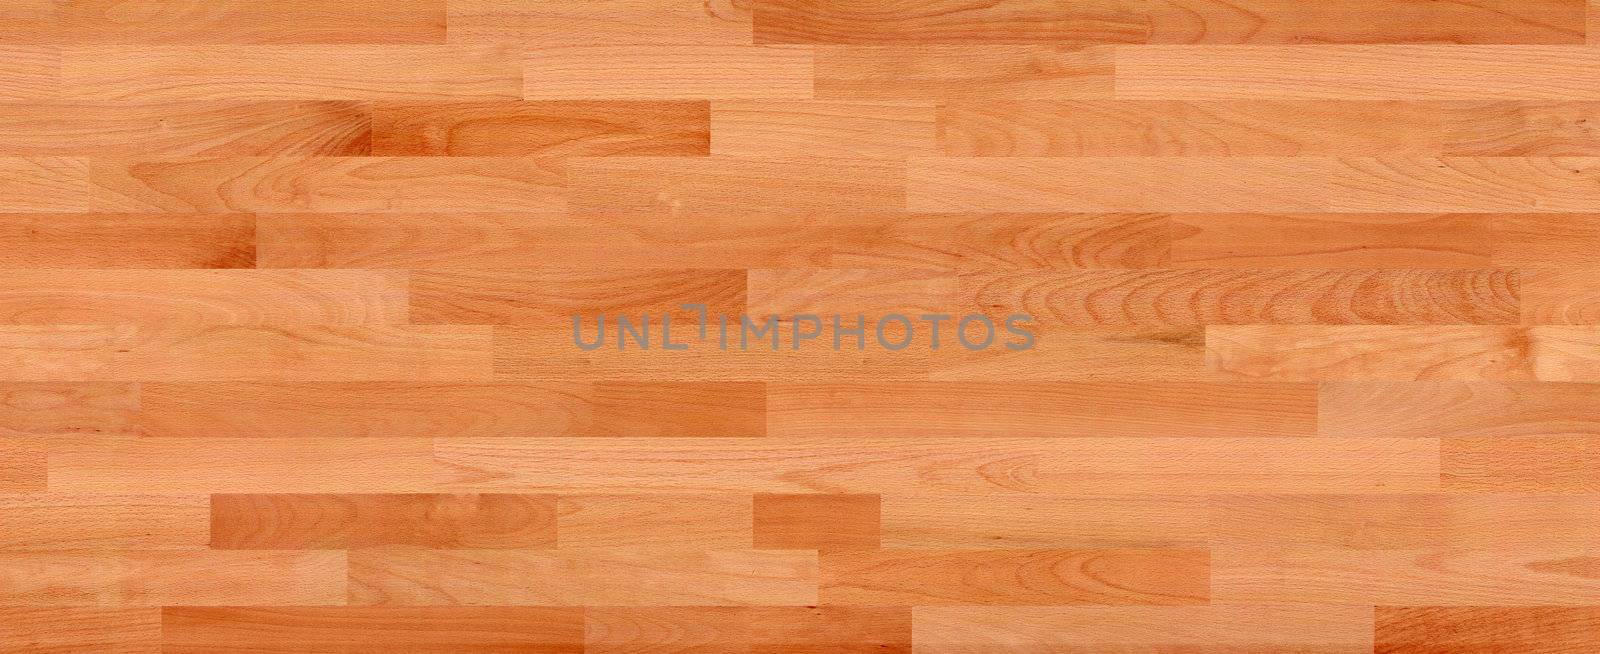 seamless oak floor texture. wood floor texture background